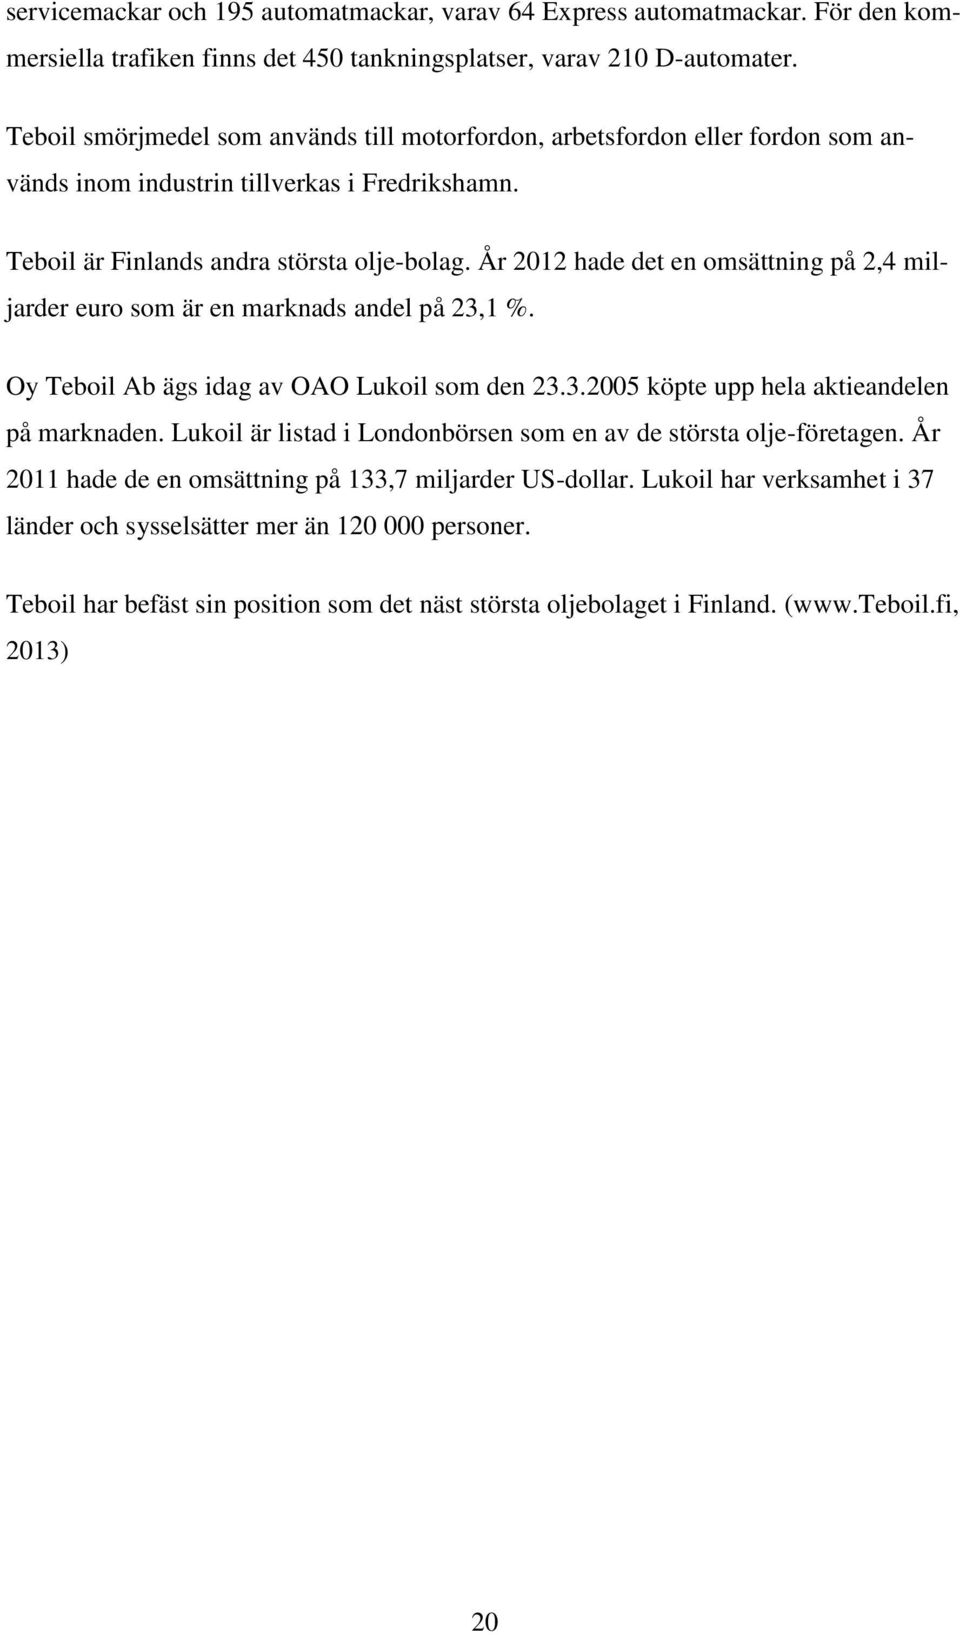 År 2012 hade det en omsättning på 2,4 miljarder euro som är en marknads andel på 23,1 %. Oy Teboil Ab ägs idag av OAO Lukoil som den 23.3.2005 köpte upp hela aktieandelen på marknaden.